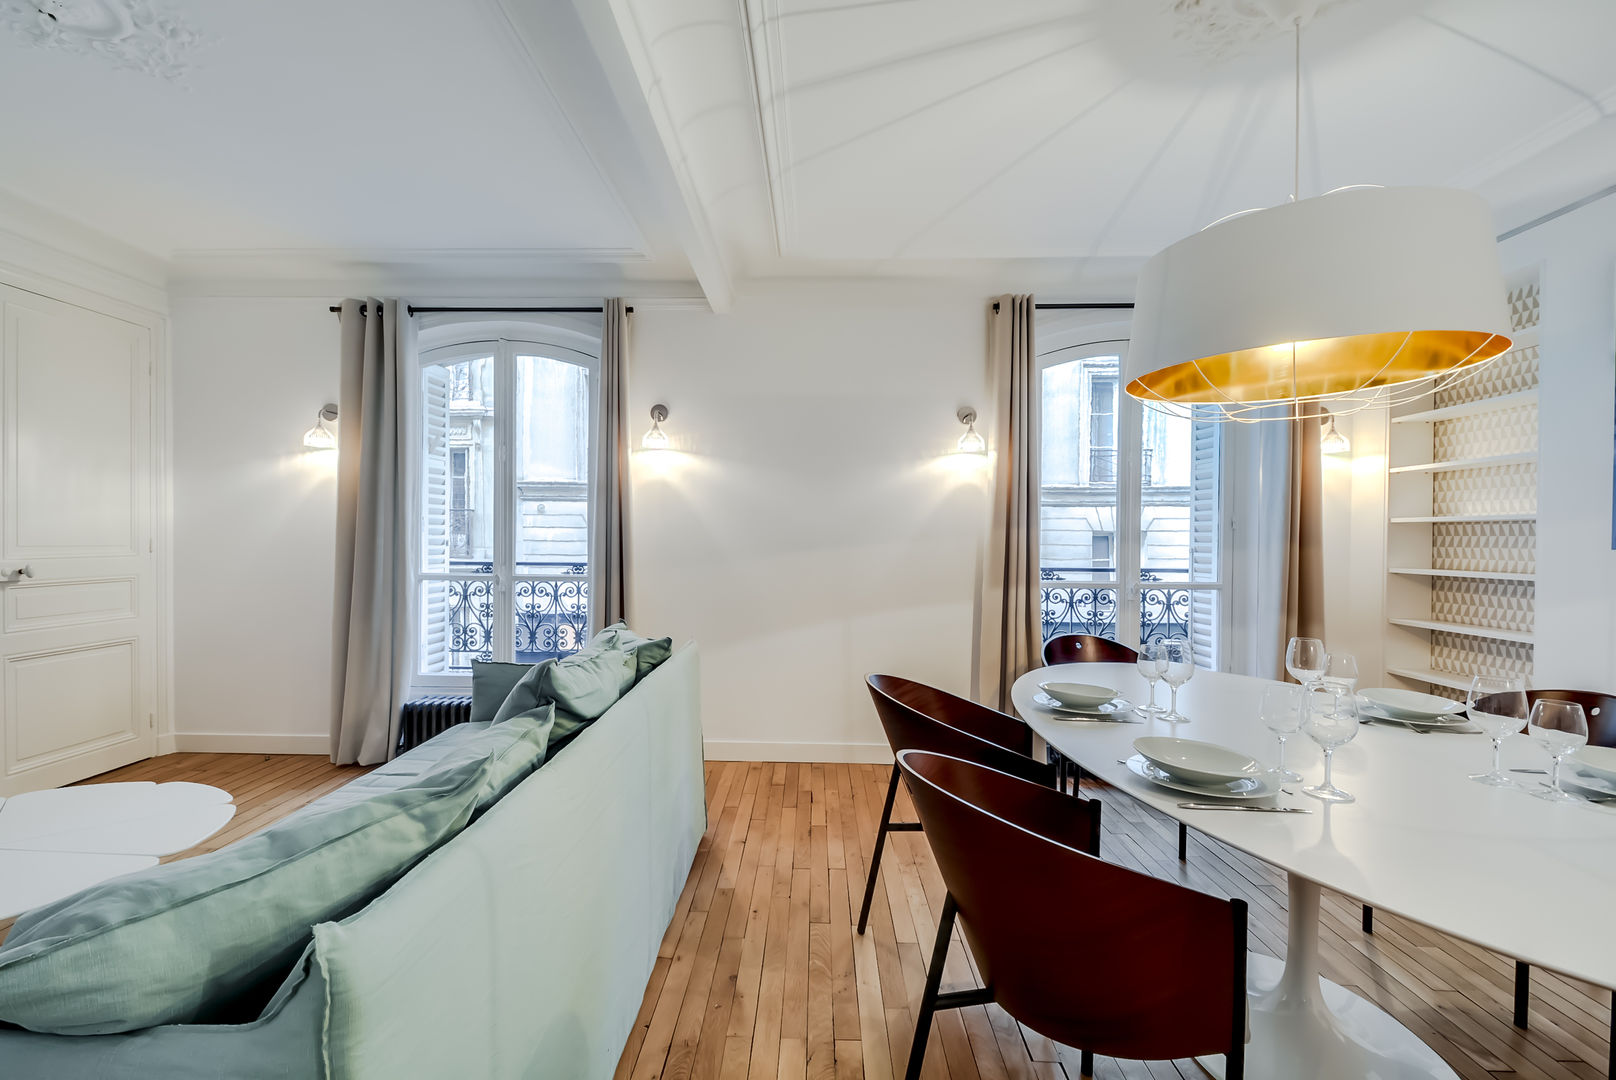 Un Appartement locatif saisonnier au coeur de Paris, ATELIER FB ATELIER FB ห้องนั่งเล่น